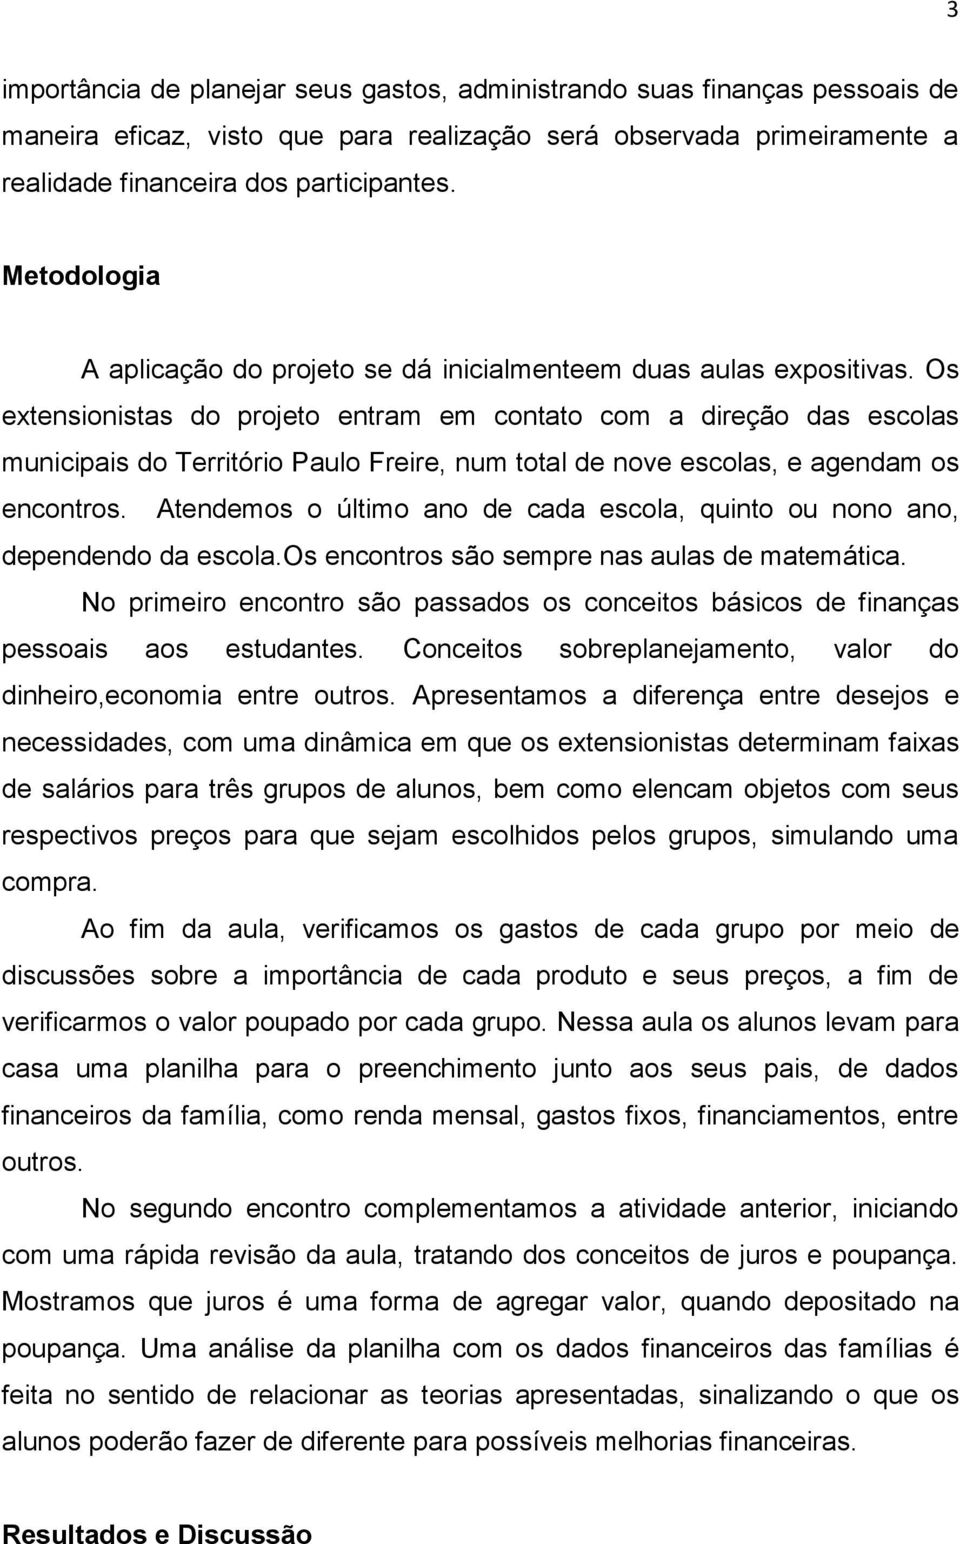 Os extensionistas do projeto entram em contato com a direção das escolas municipais do Território Paulo Freire, num total de nove escolas, e agendam os encontros.